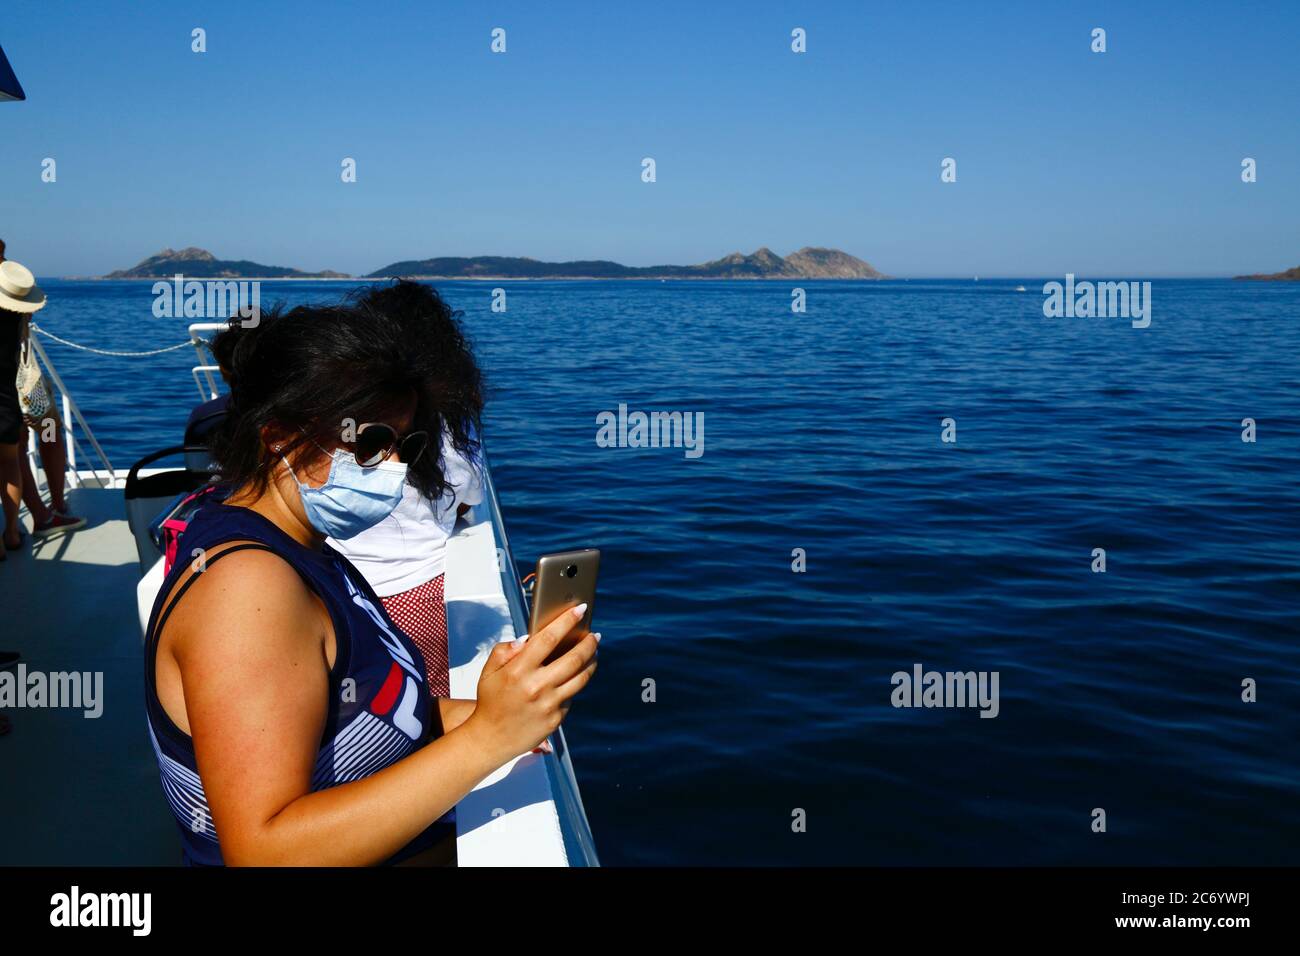 12 luglio 2020, Ria de Vigo, Galizia, Spagna settentrionale: Un passeggero con maschera facciale scatta foto con il suo smartphone dal traghetto da Vigo alle Isole Cies (sullo sfondo). La Spagna ha rilassato le restrizioni di viaggio dal 21 giugno dopo un rigoroso blocco per controllare il Coronavirus Covid 19 e molti spagnoli stanno tornando alle spiagge. Le Isole Cies sono una popolare destinazione turistica al largo della costa della Galizia. L'uso di maschere facciali è ancora obbligatorio sui trasporti pubblici. Foto Stock